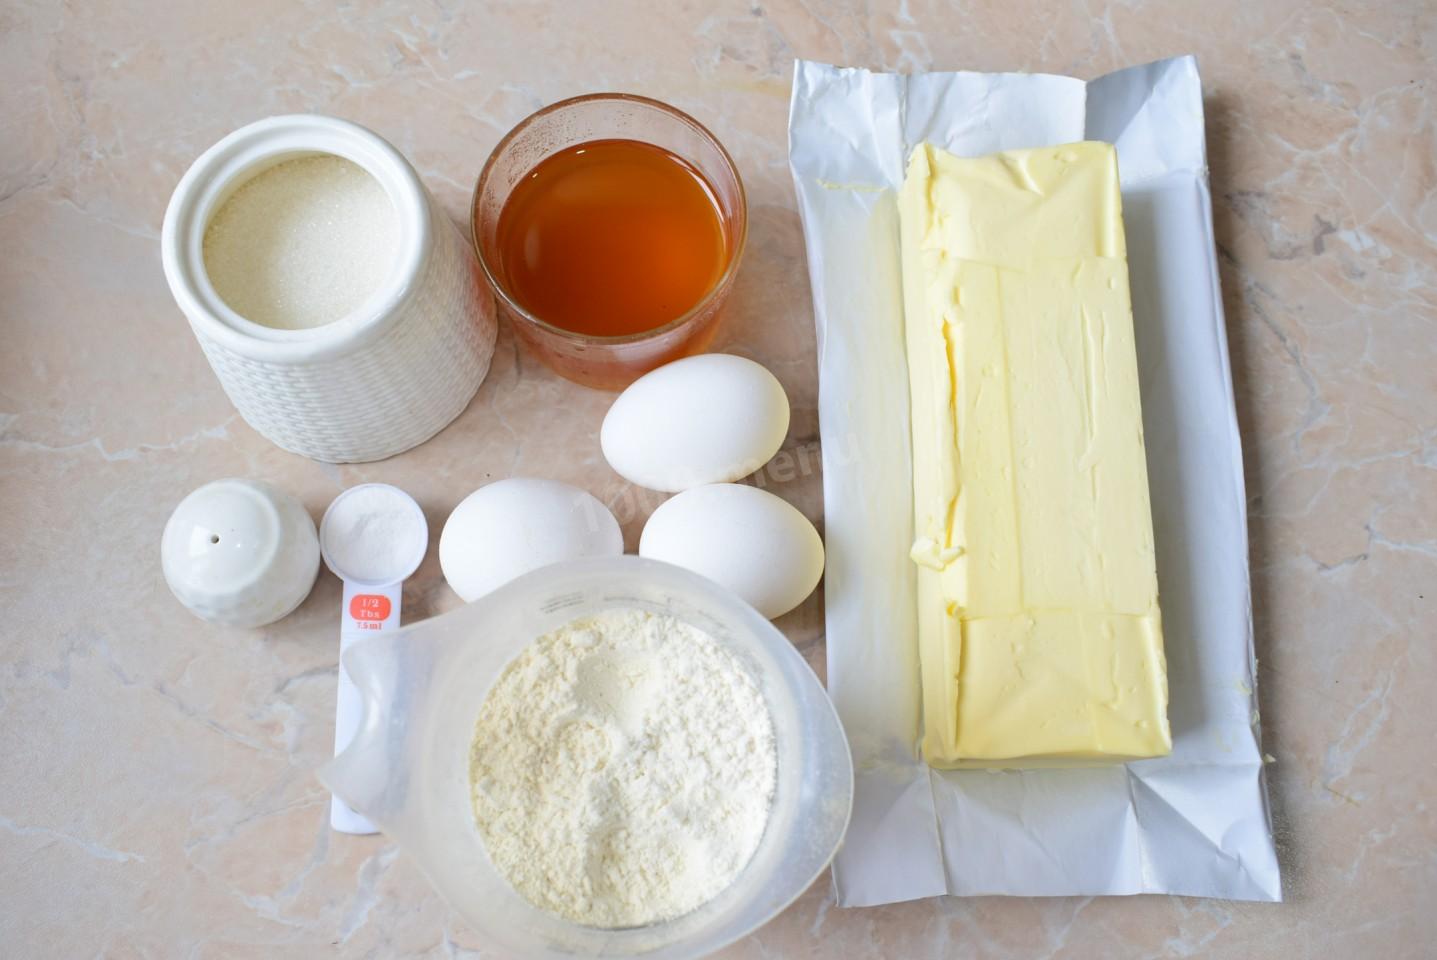 Крем молоко яйцо сахар масло мука. Медовое масло сливочное. Мука сода яйца и сахар. Сливочное масло с медом. Мед масло яйца.